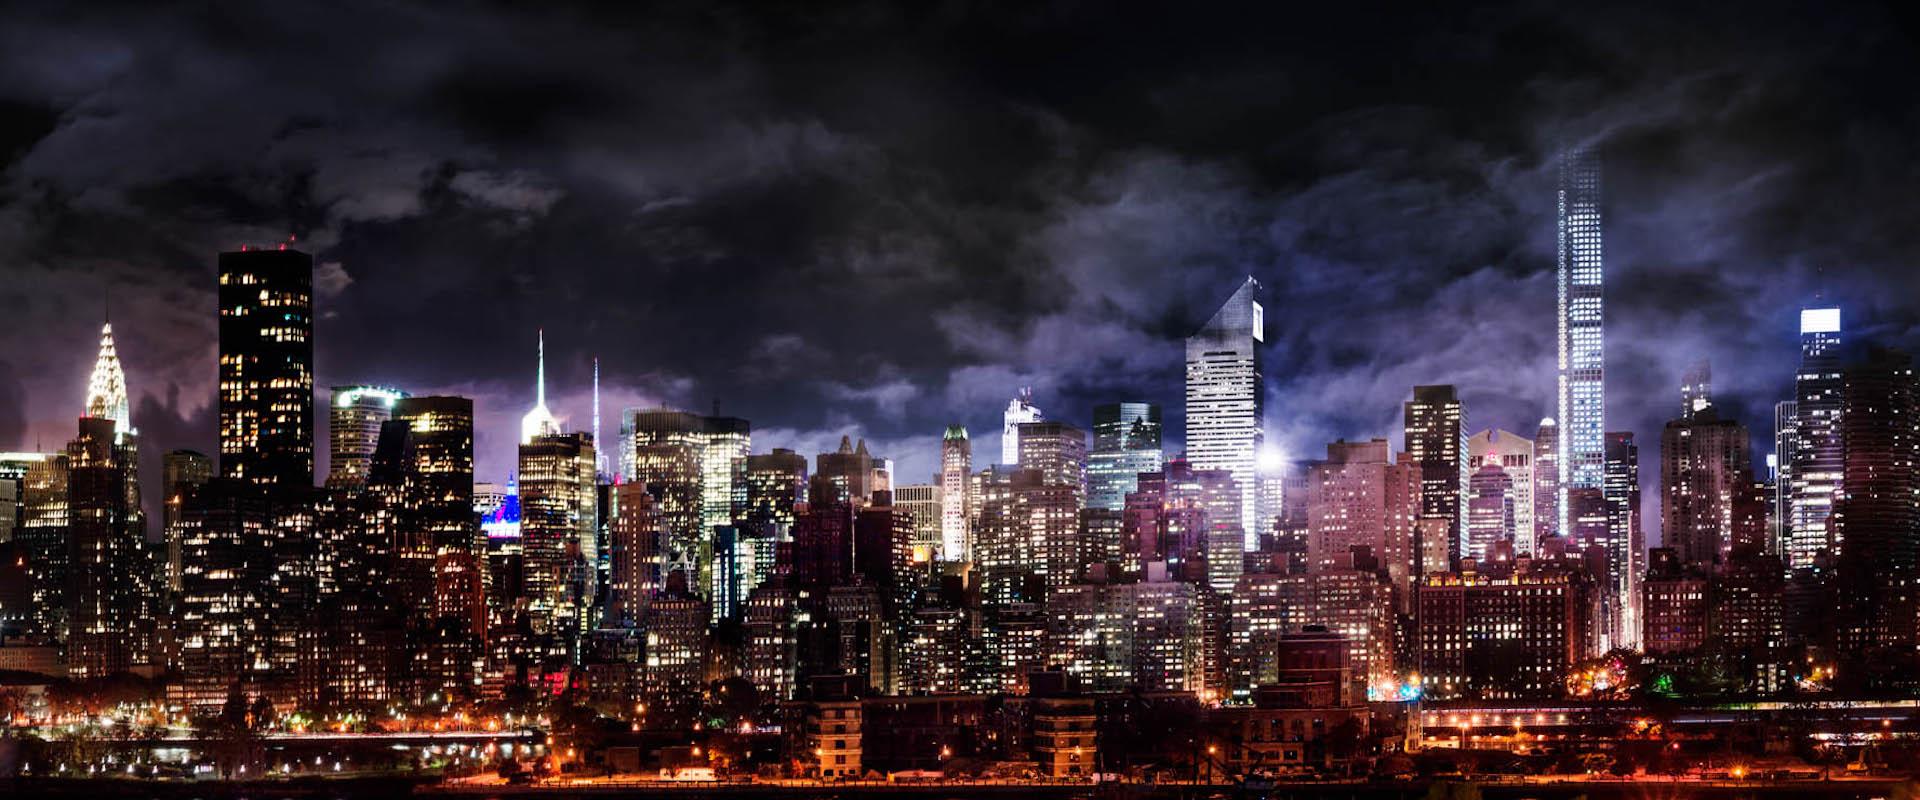 Manhattan Nights